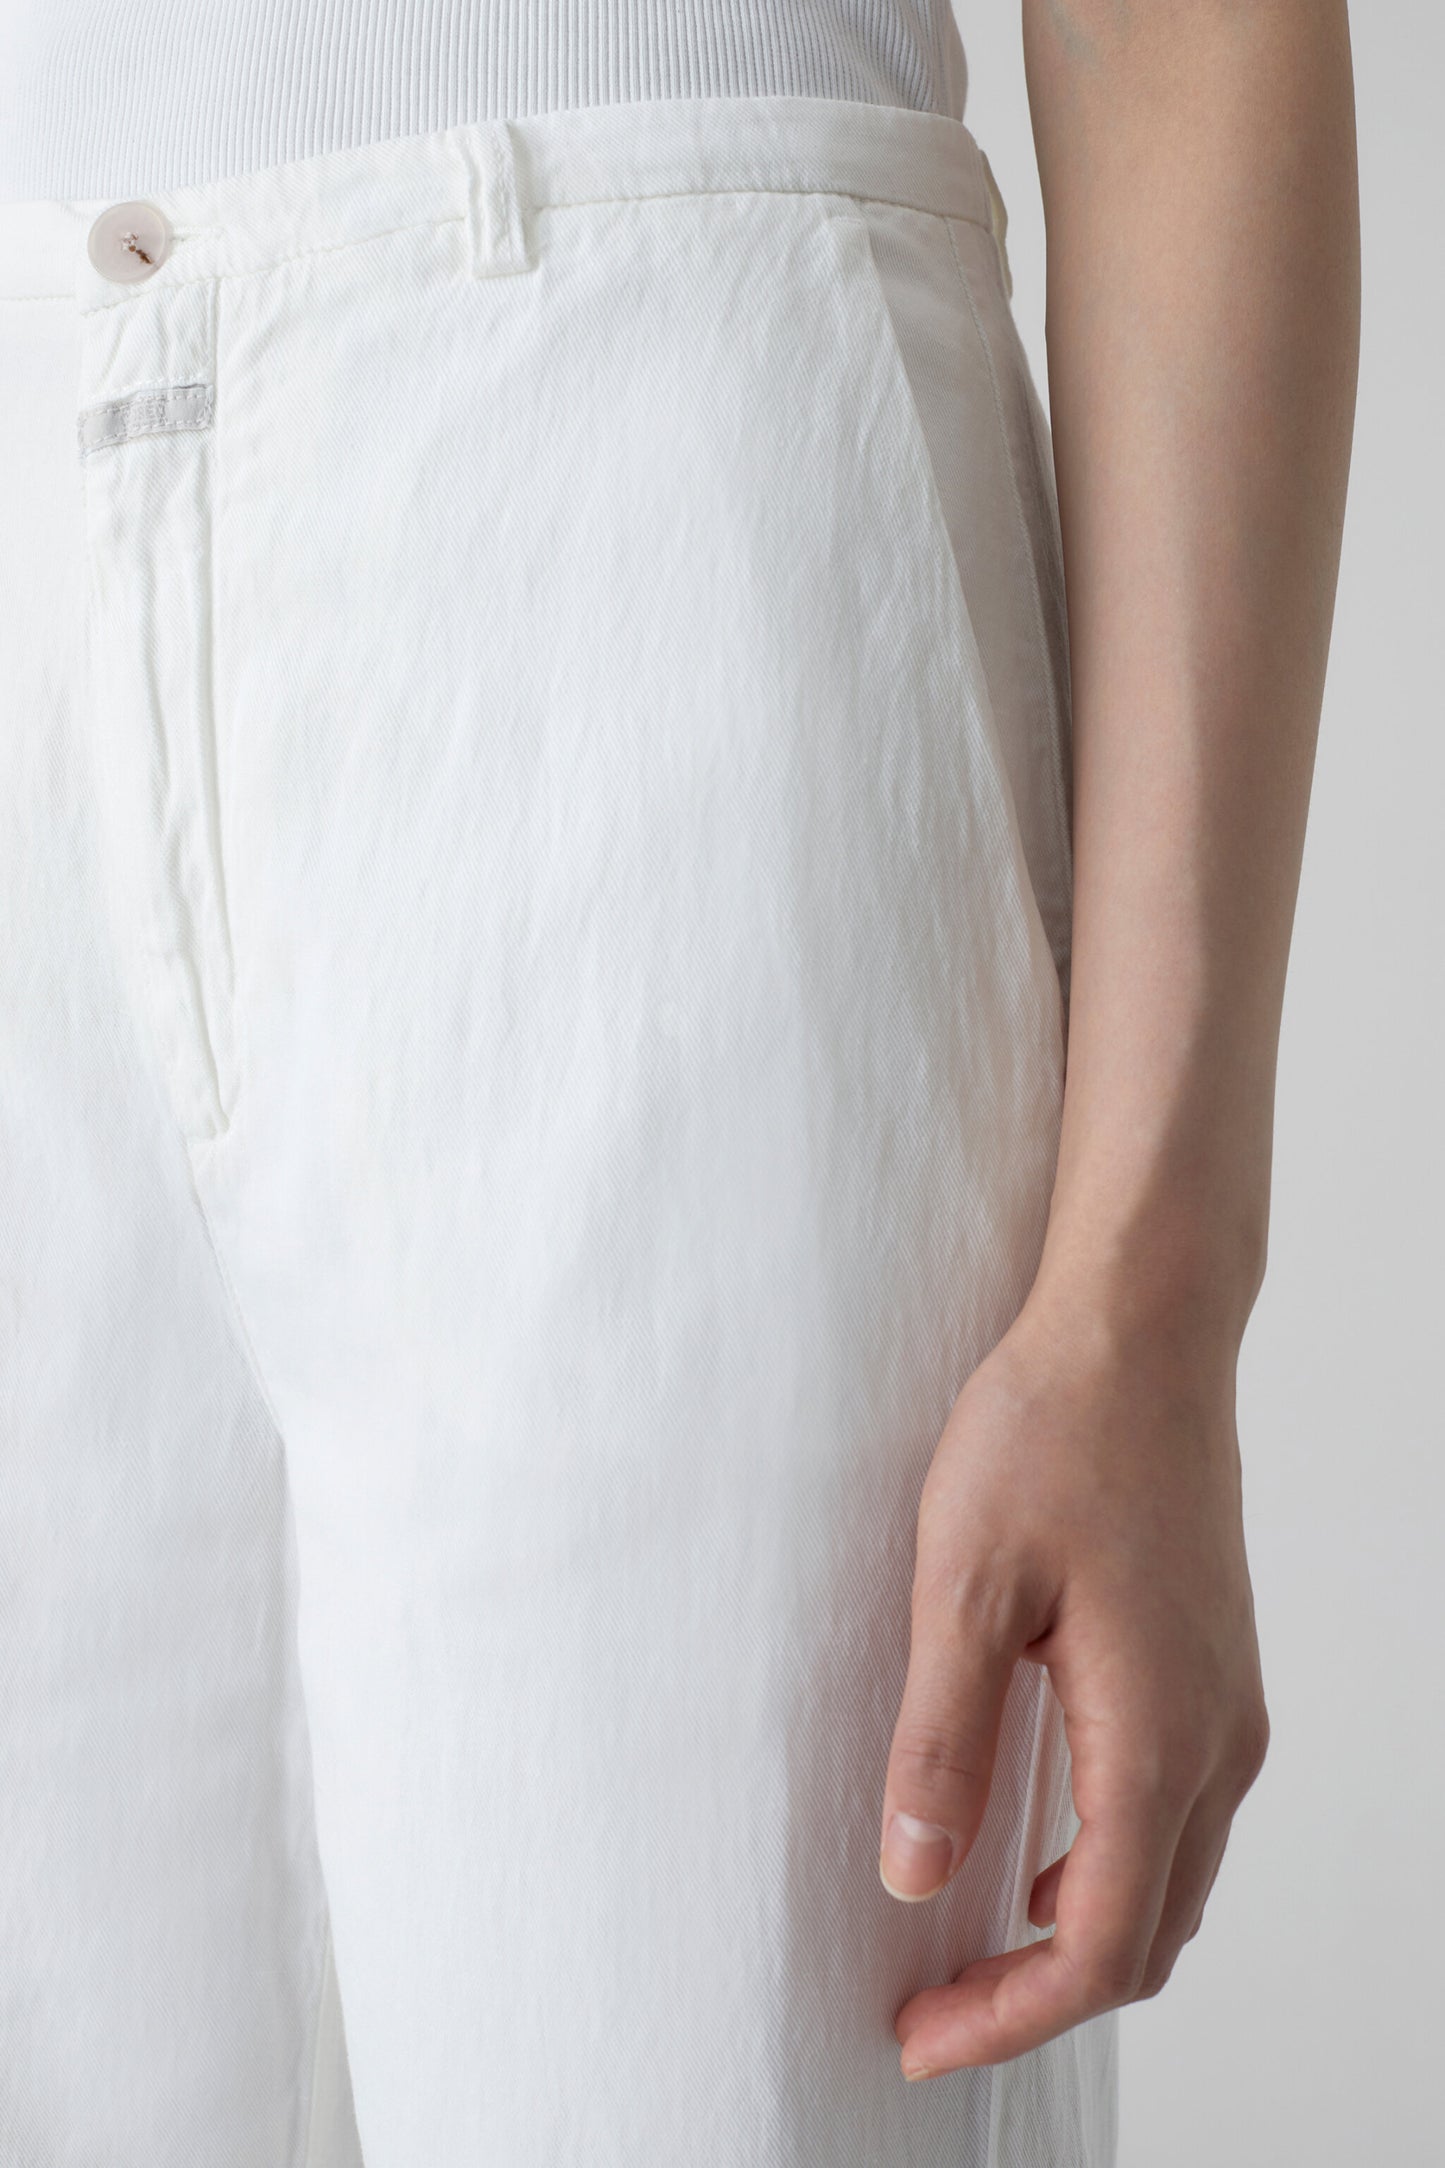 White Mawbray Linen Pants